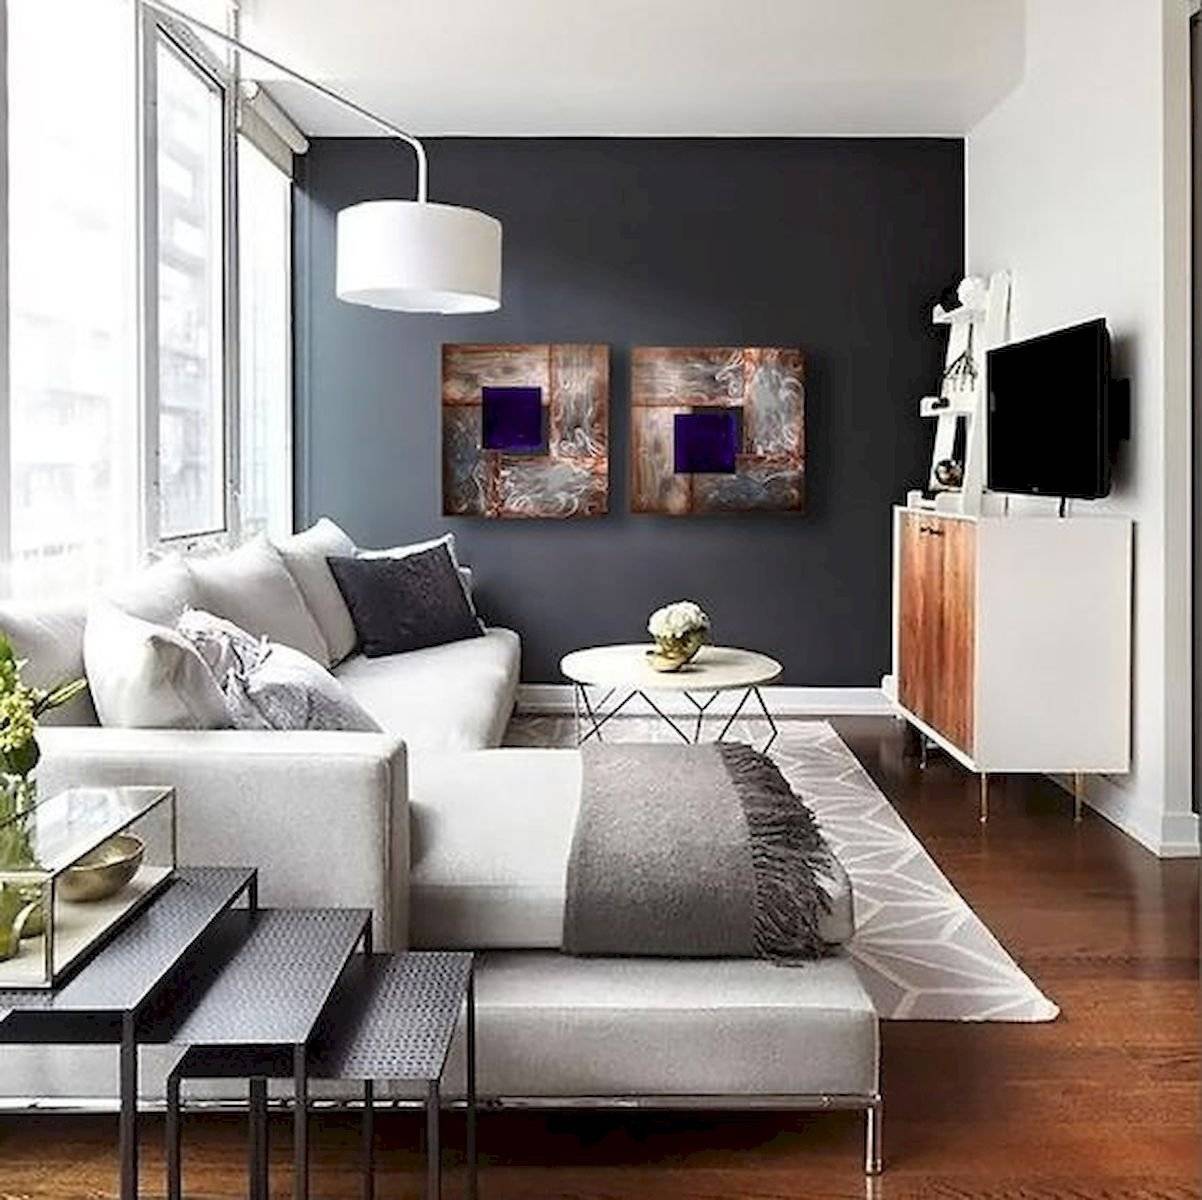 Два подхода: единый стиль для всей квартиры или разные идеи для каждого помещения?